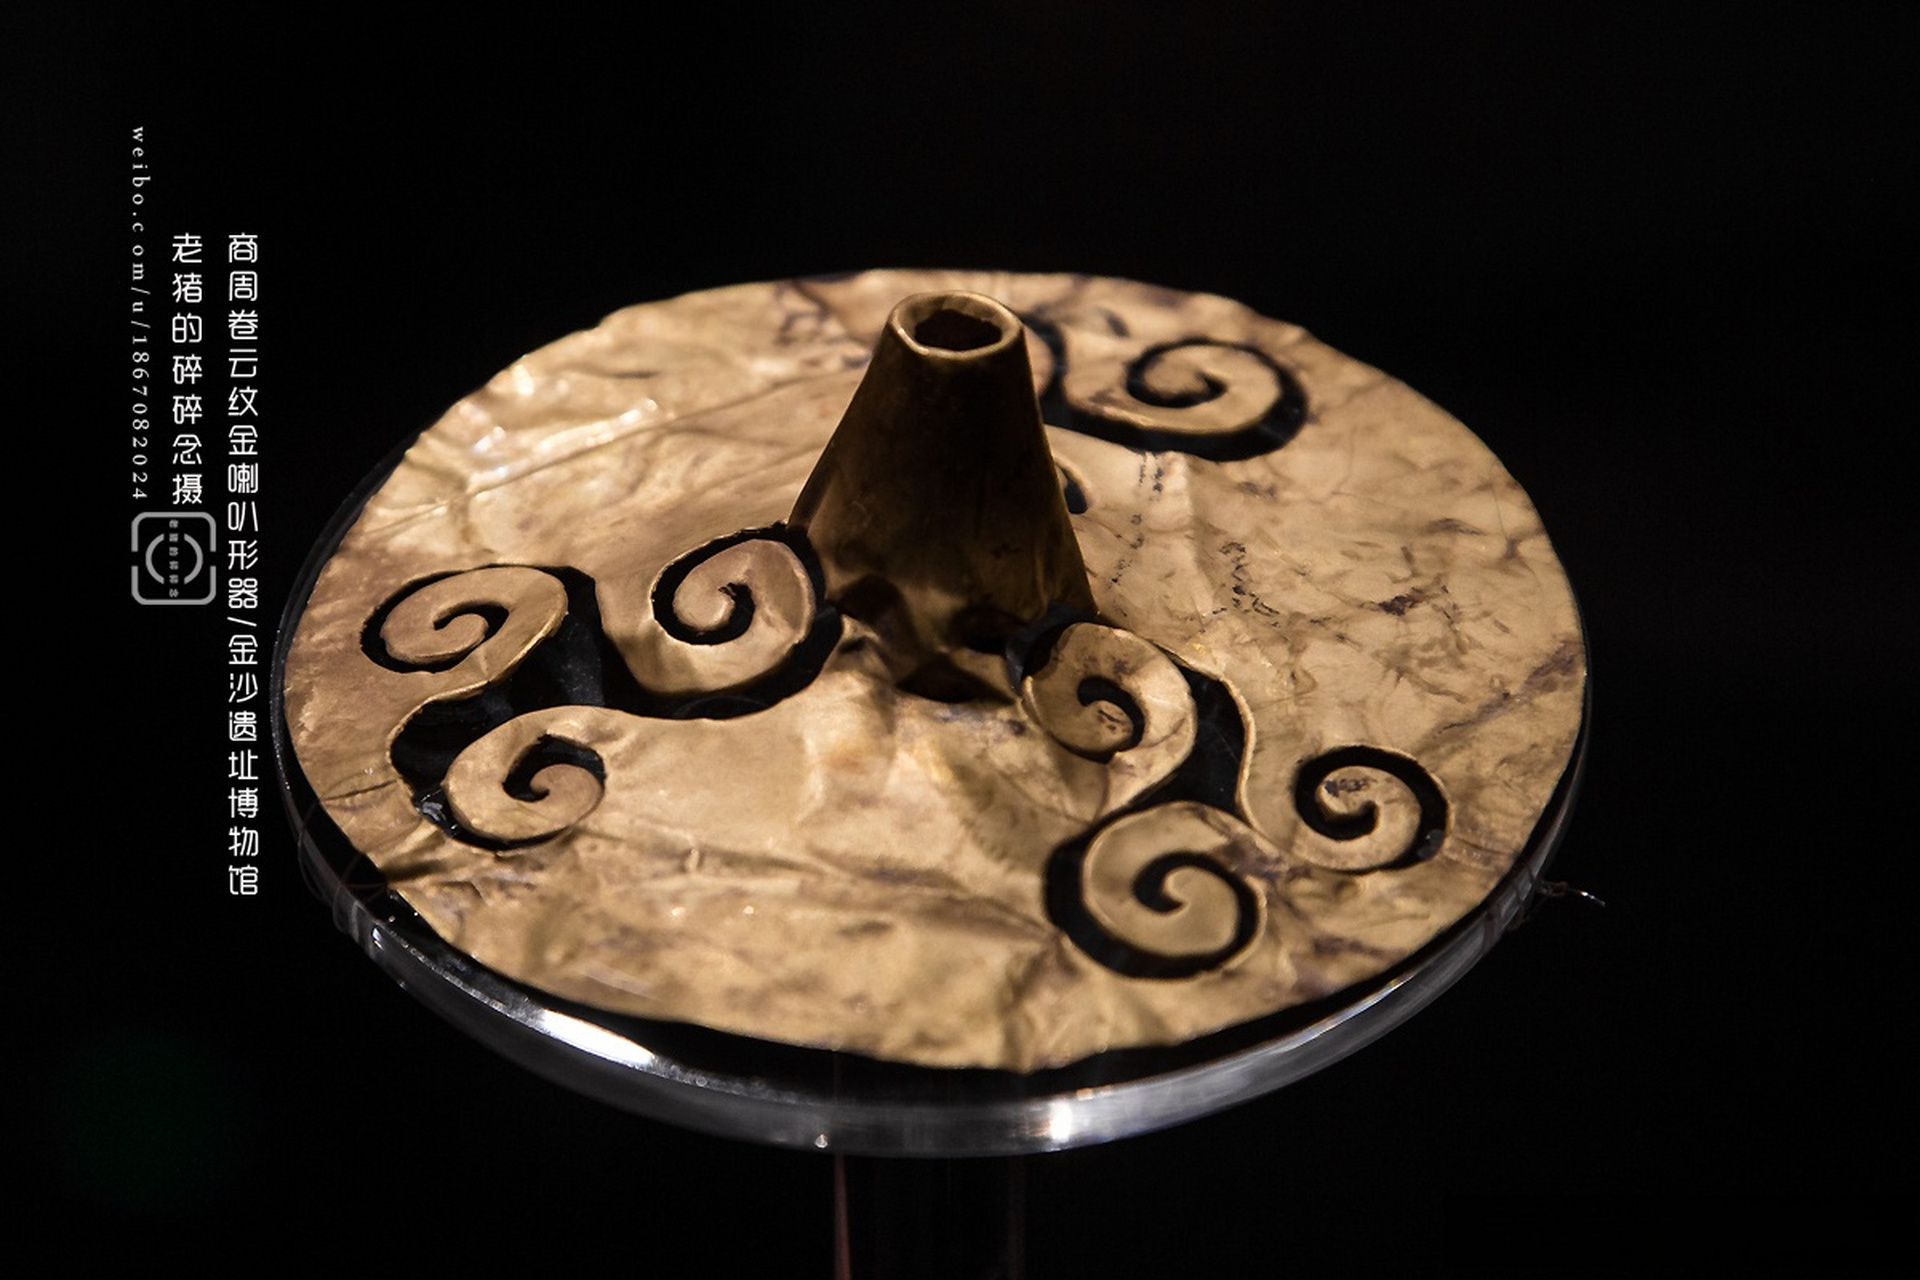 成都金沙遗址博物馆的名器之一,造型极为独特,是古蜀文化中首次分现